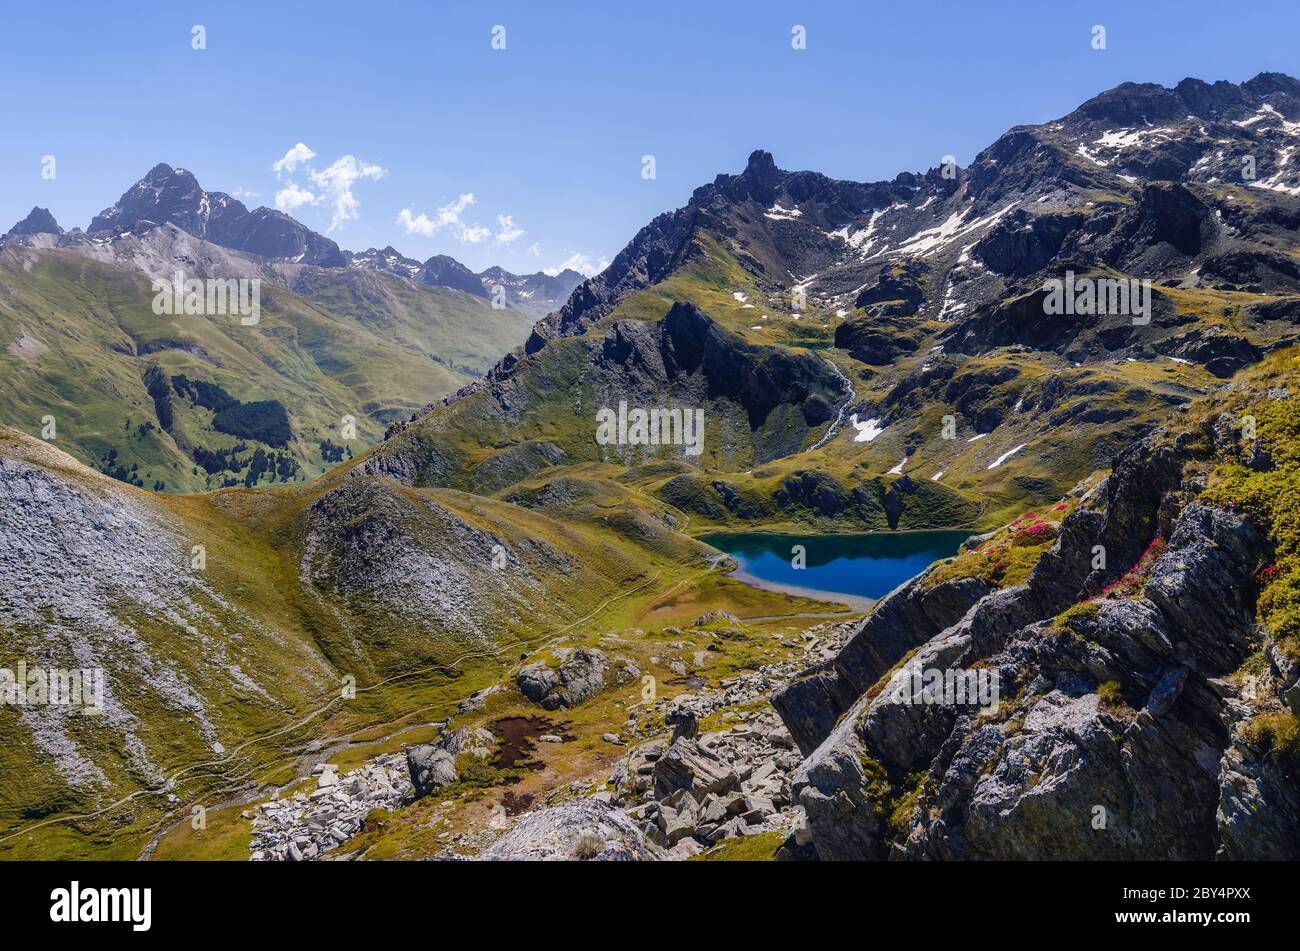 Der Lac Bleu in Chianale, Bergsee in den italienischen alpen von Cuneo, Piemont, mit Blick auf den berühmten Monviso Gipfel (Mount Viso) Stockfoto